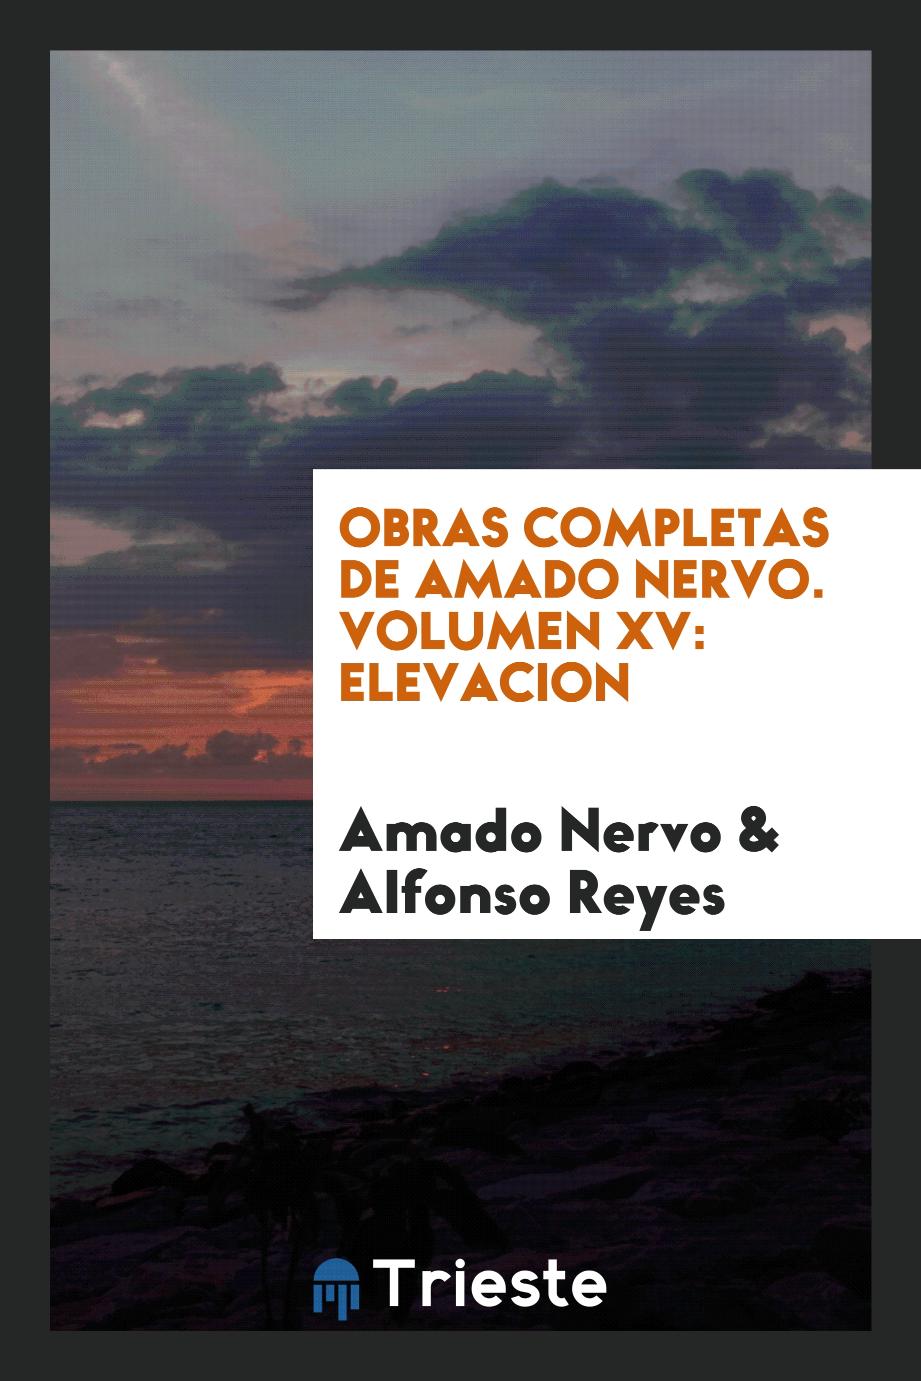 Obras completas de Amado Nervo. Volumen XV: Elevacion